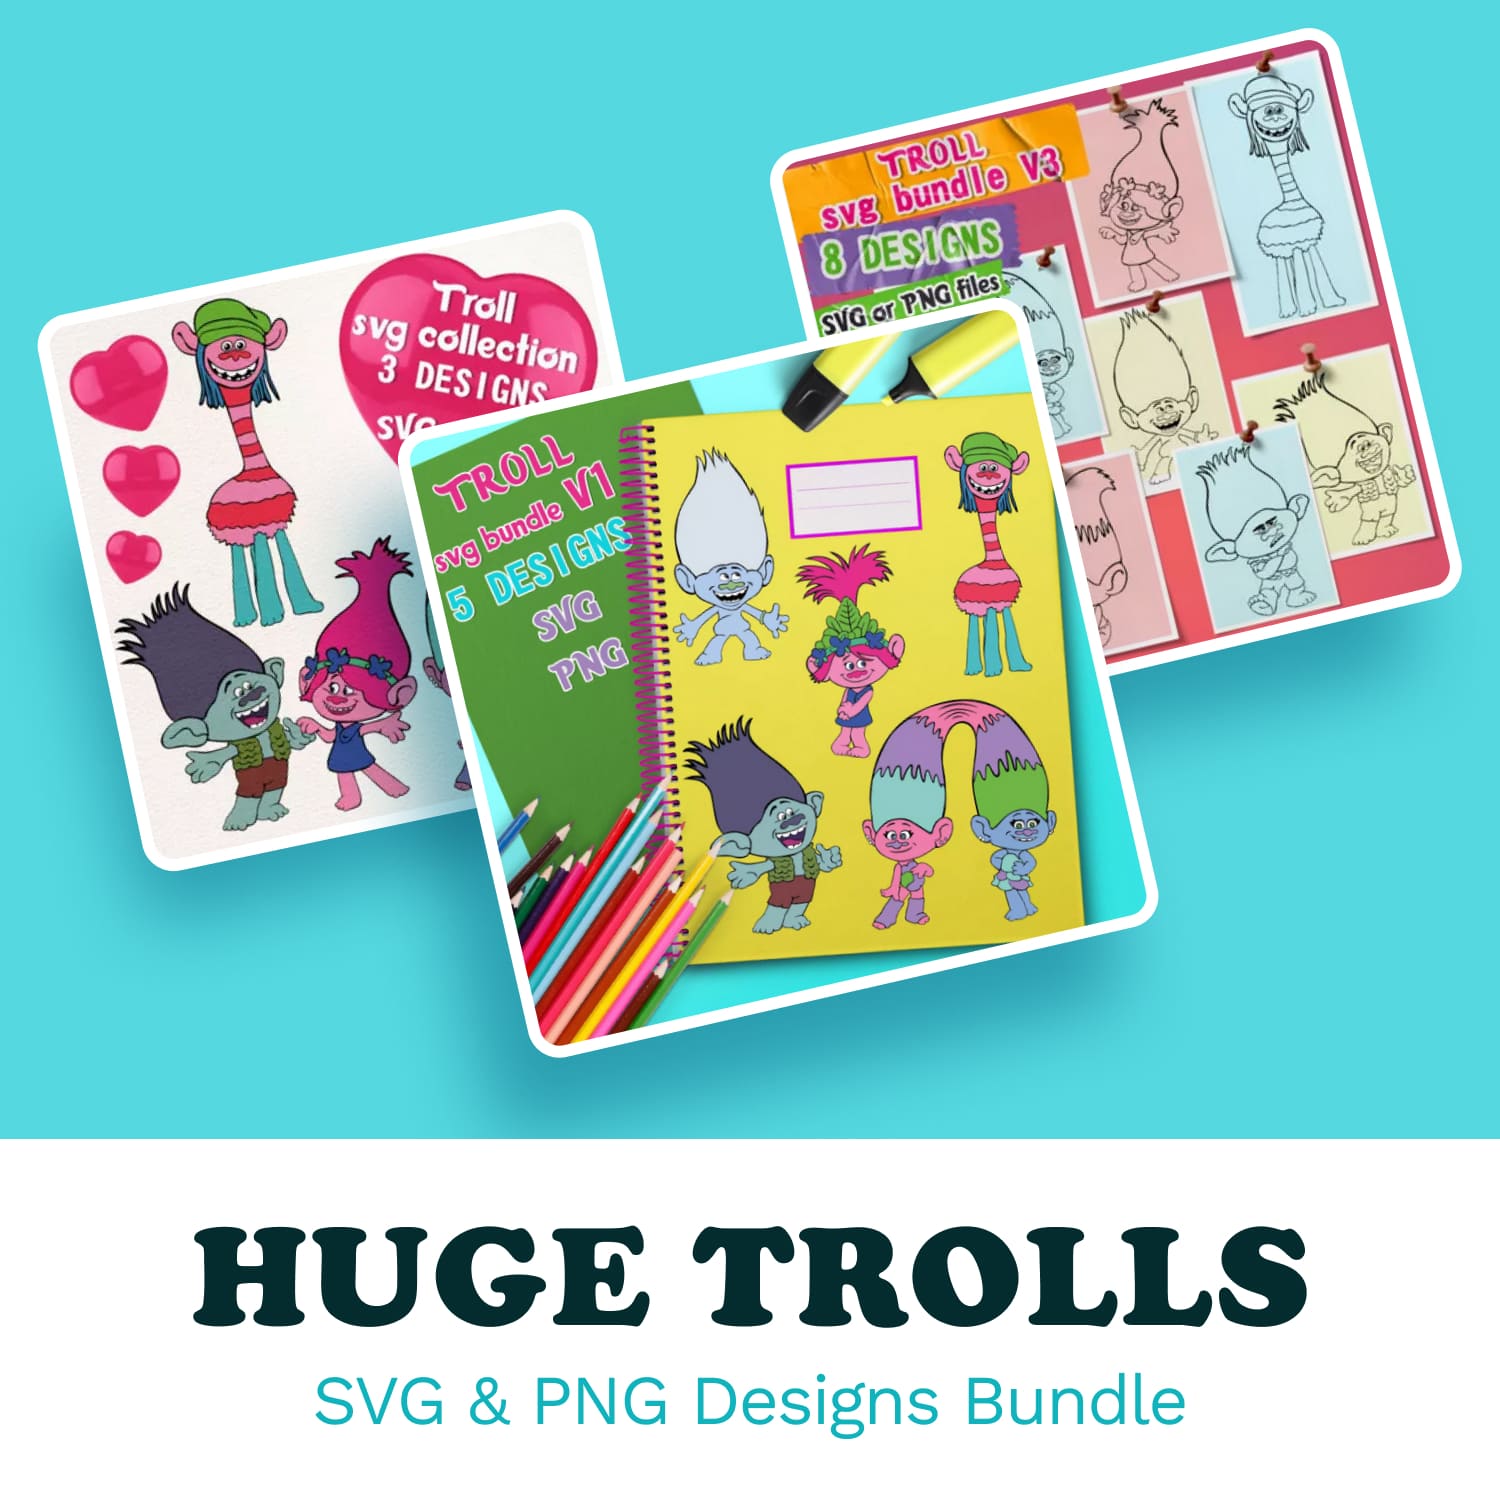 HUGE Trolls SVG & PNG Designs bundle.